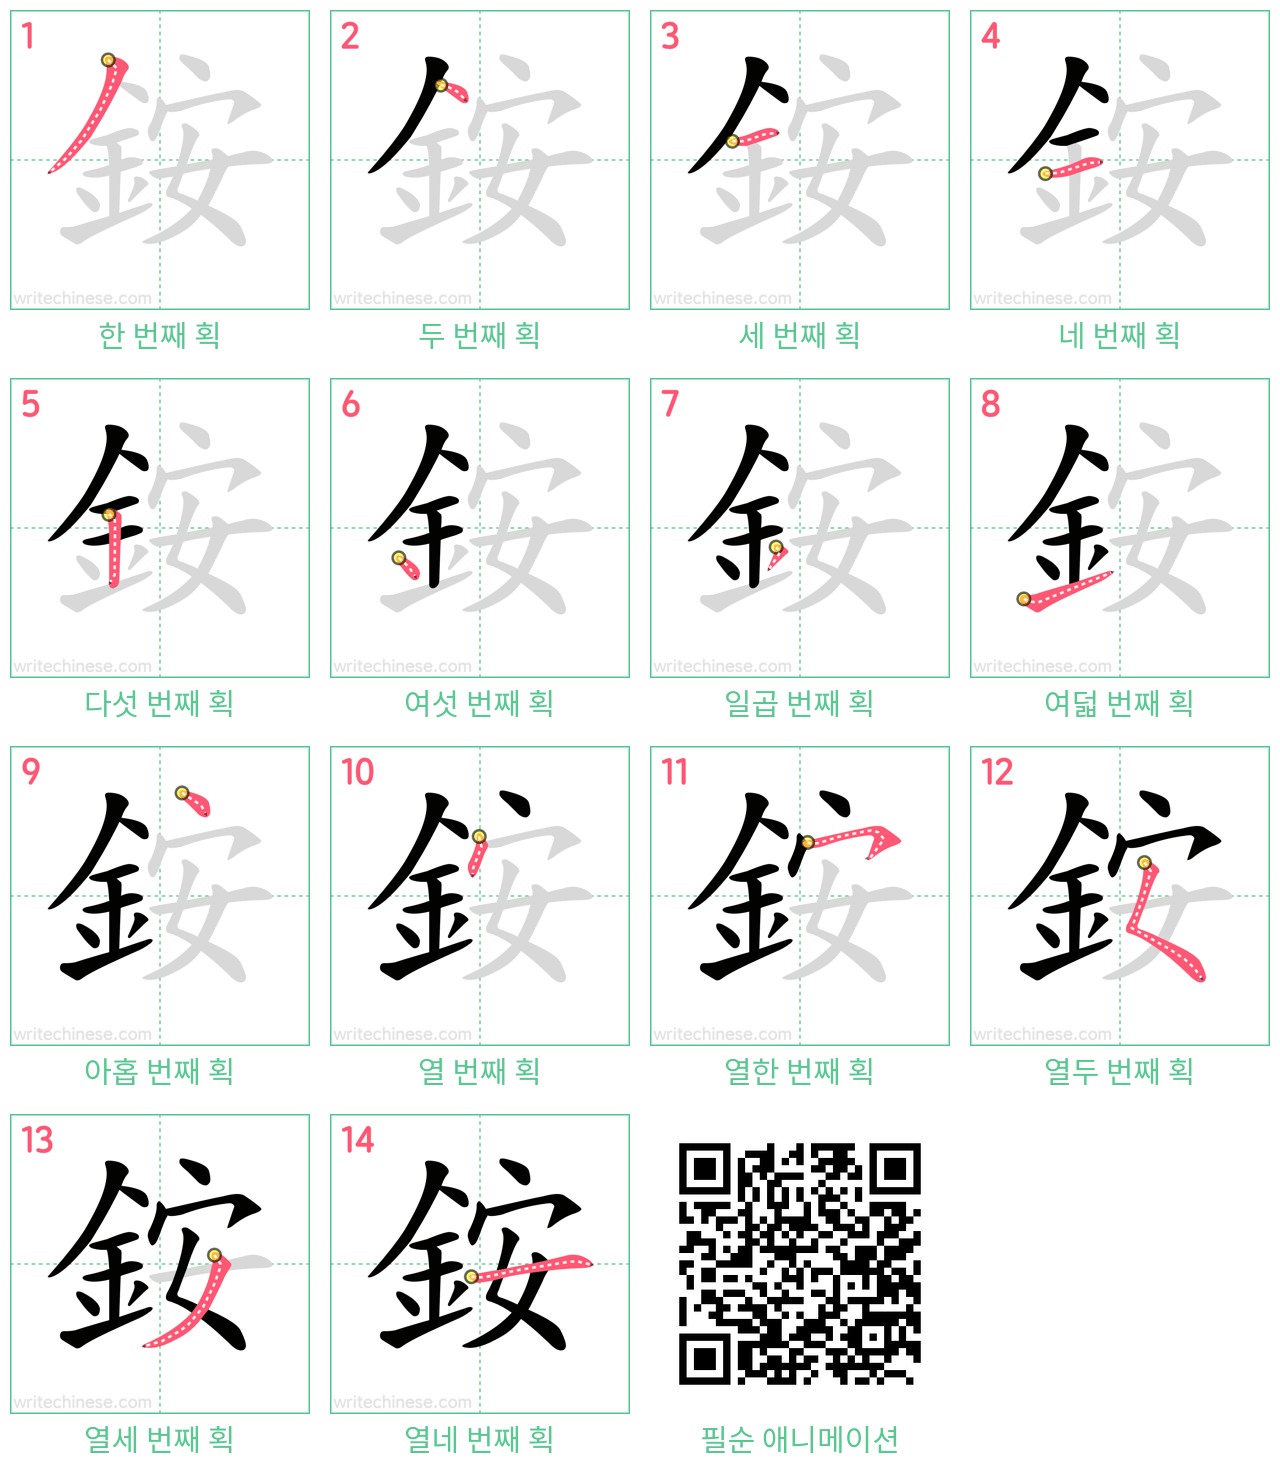 銨 step-by-step stroke order diagrams